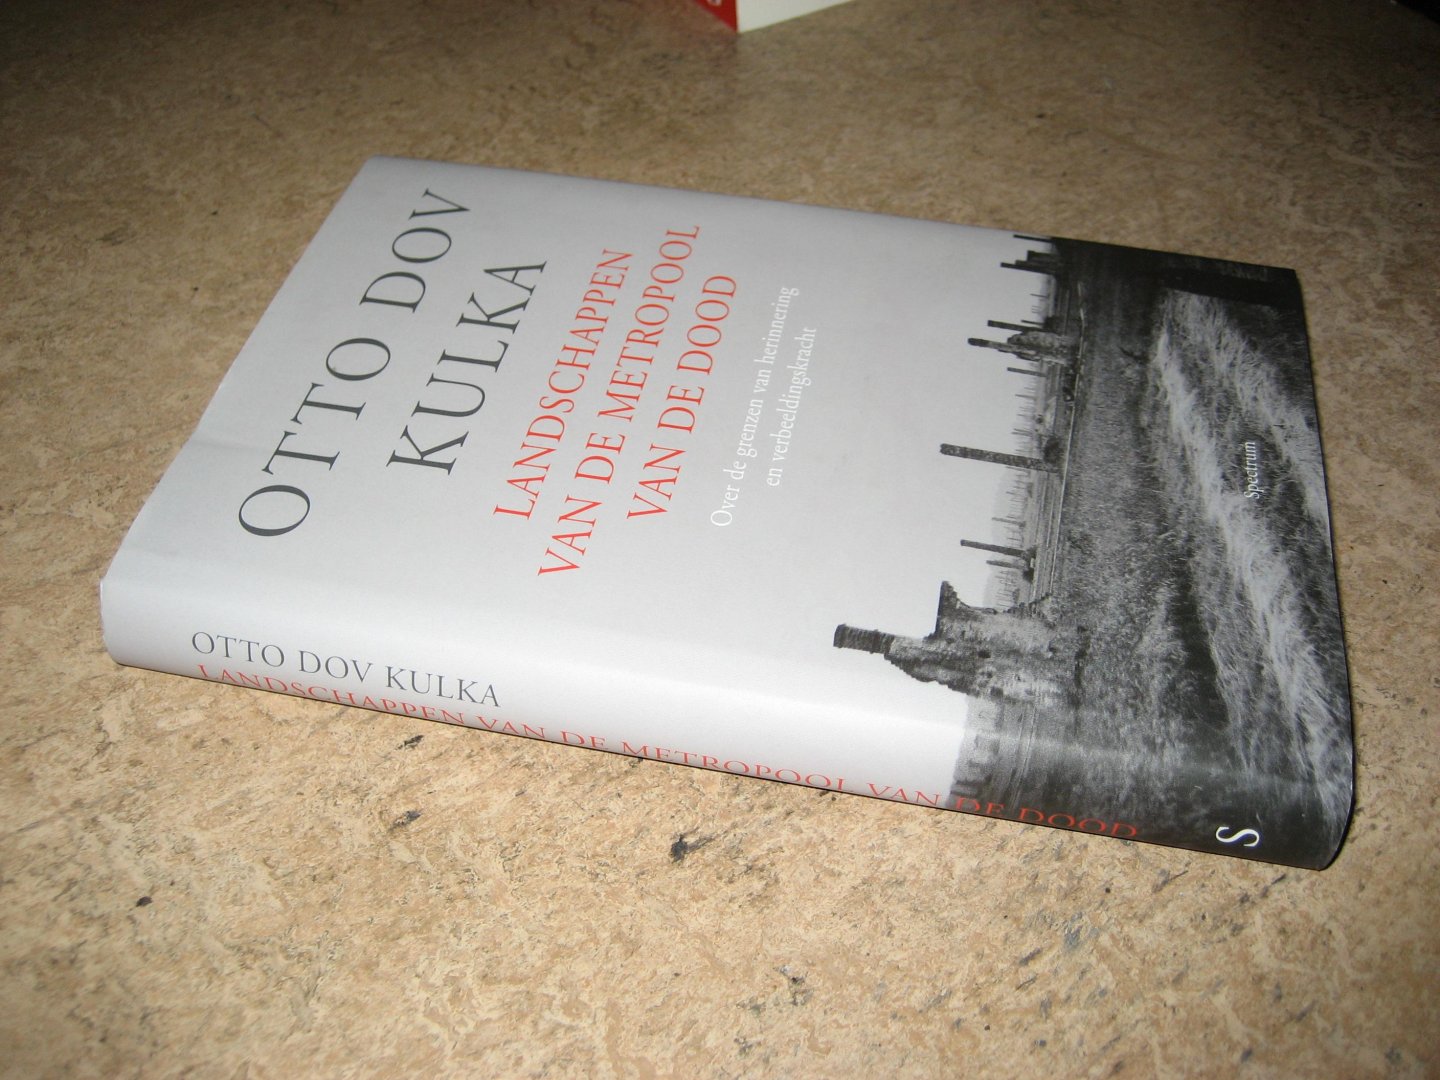 Dov Kulka, Otto - Landschappen van de metropool van de dood. Over de grenzen van herinnering en voorstellingskracht